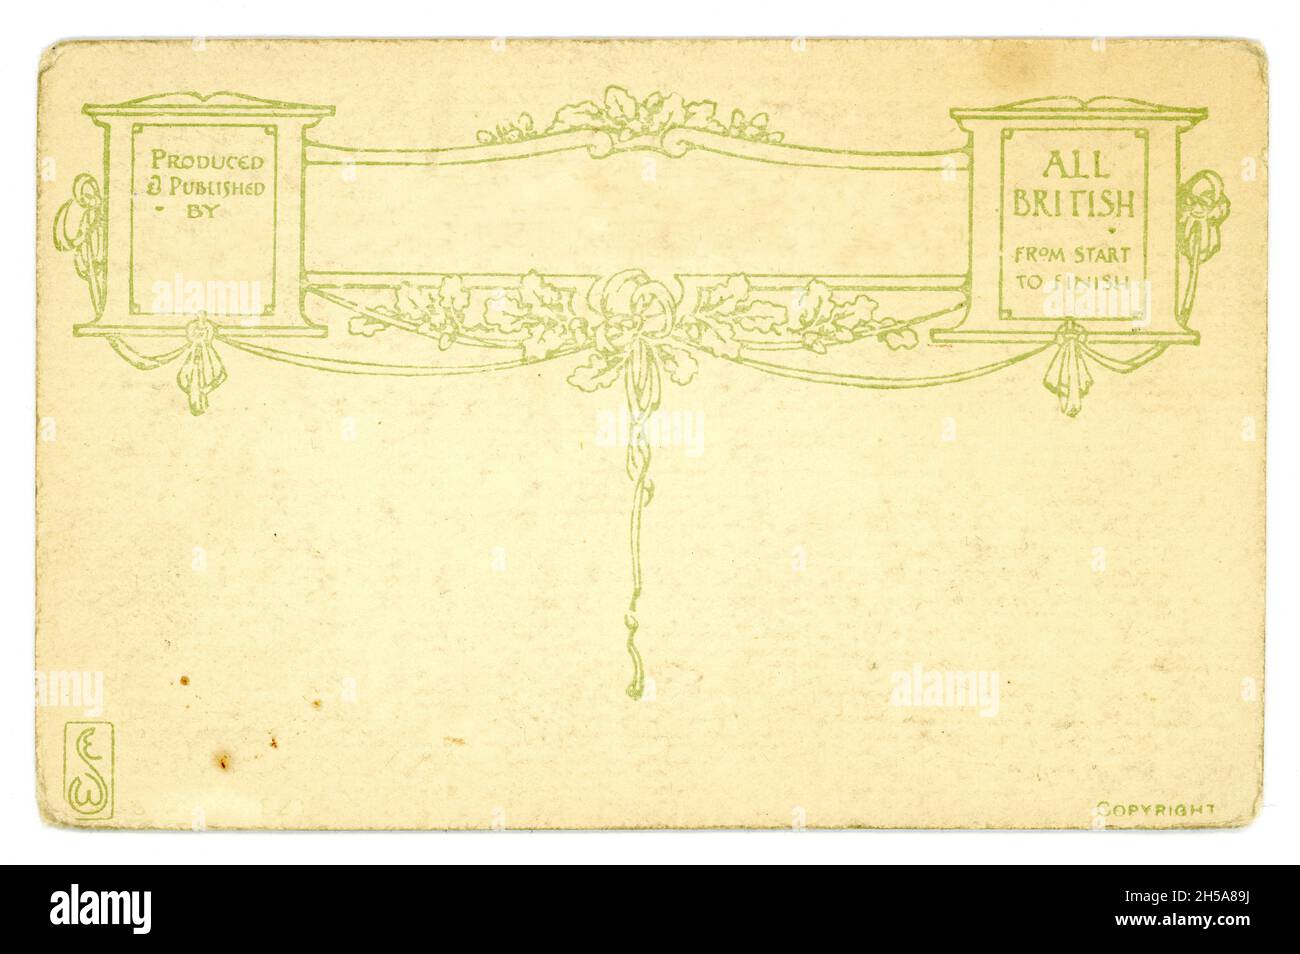 Rückseite der ursprünglichen Postkarte aus der Zeit WW1 mit attraktivem Design. Platz für eigenen Text, Kopie. Um 1914, England, Großbritannien Stockfoto